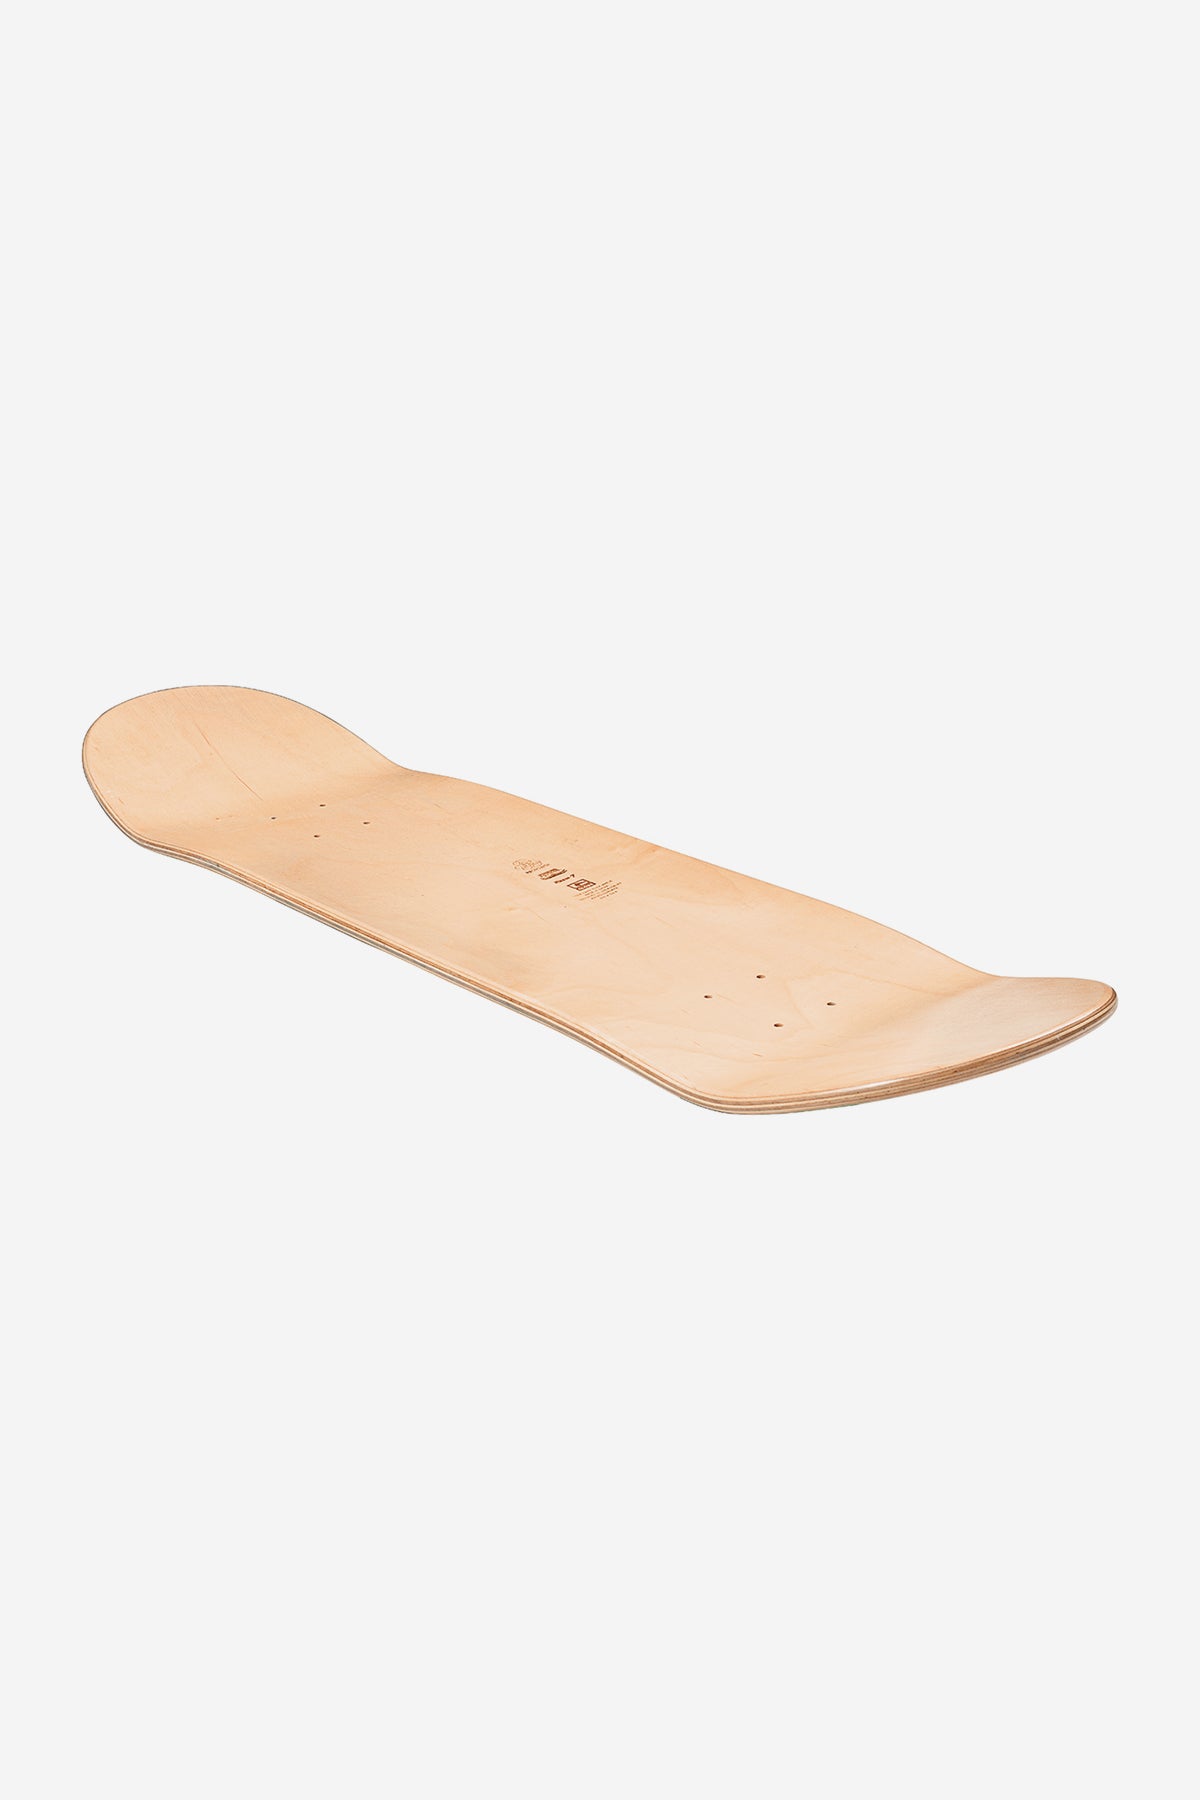 Globe - Goodstock - Off White- 8.0" (en anglais) Skateboard Deck